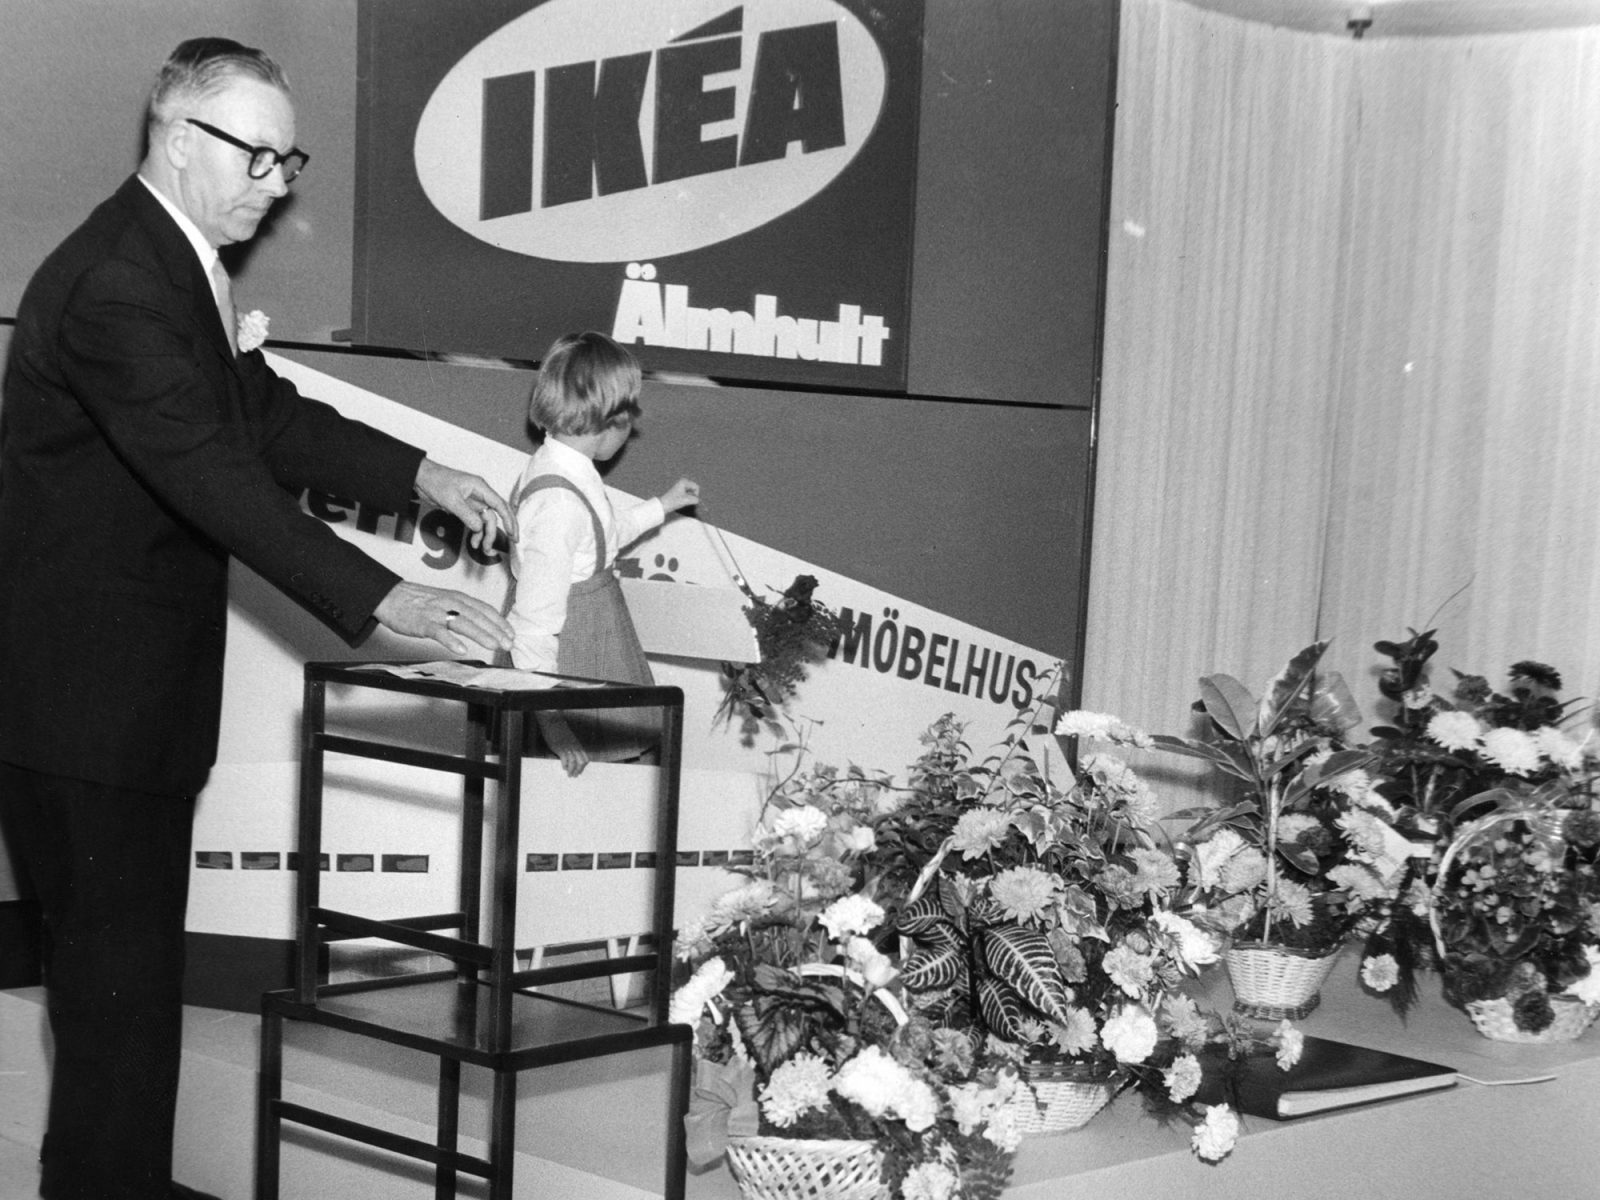 Un hombre mayor con traje oscuro, Eric Anderek, y una niña pequeña ante el cartel de IKEA; ramos de flores a sus pies.